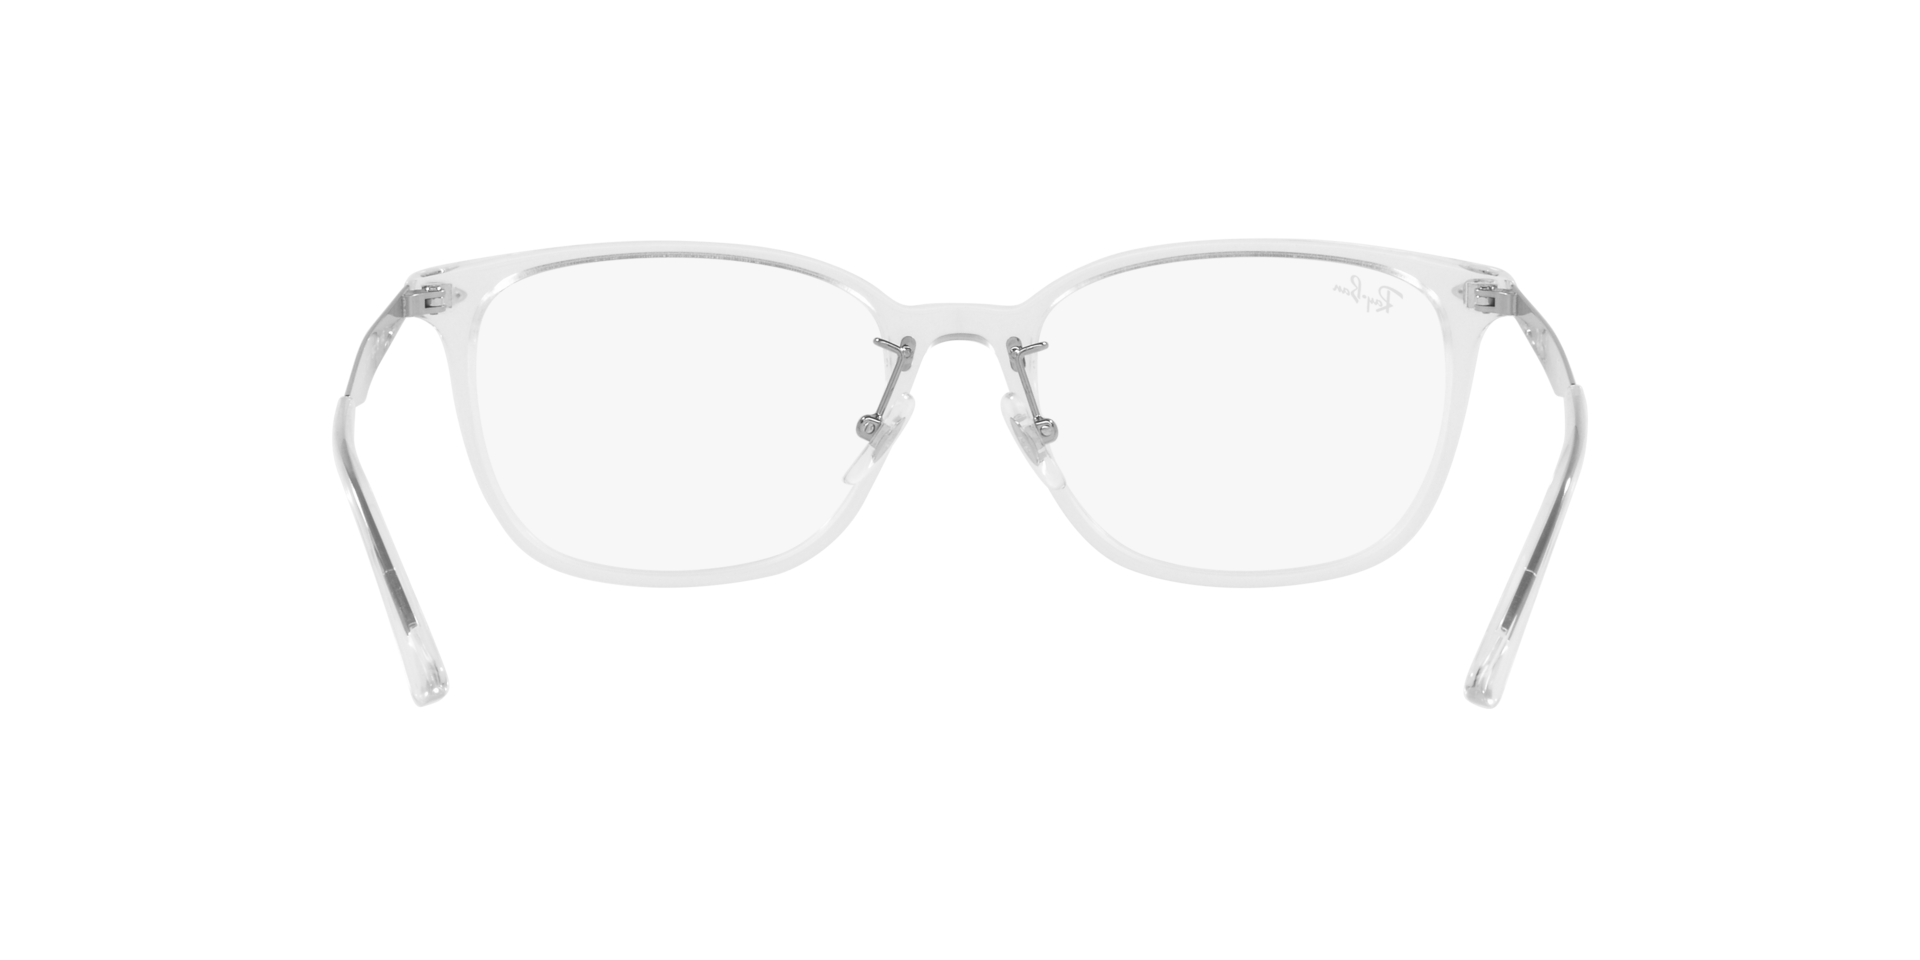 Ray Ban l 低奢細邊方框眼鏡 純透明